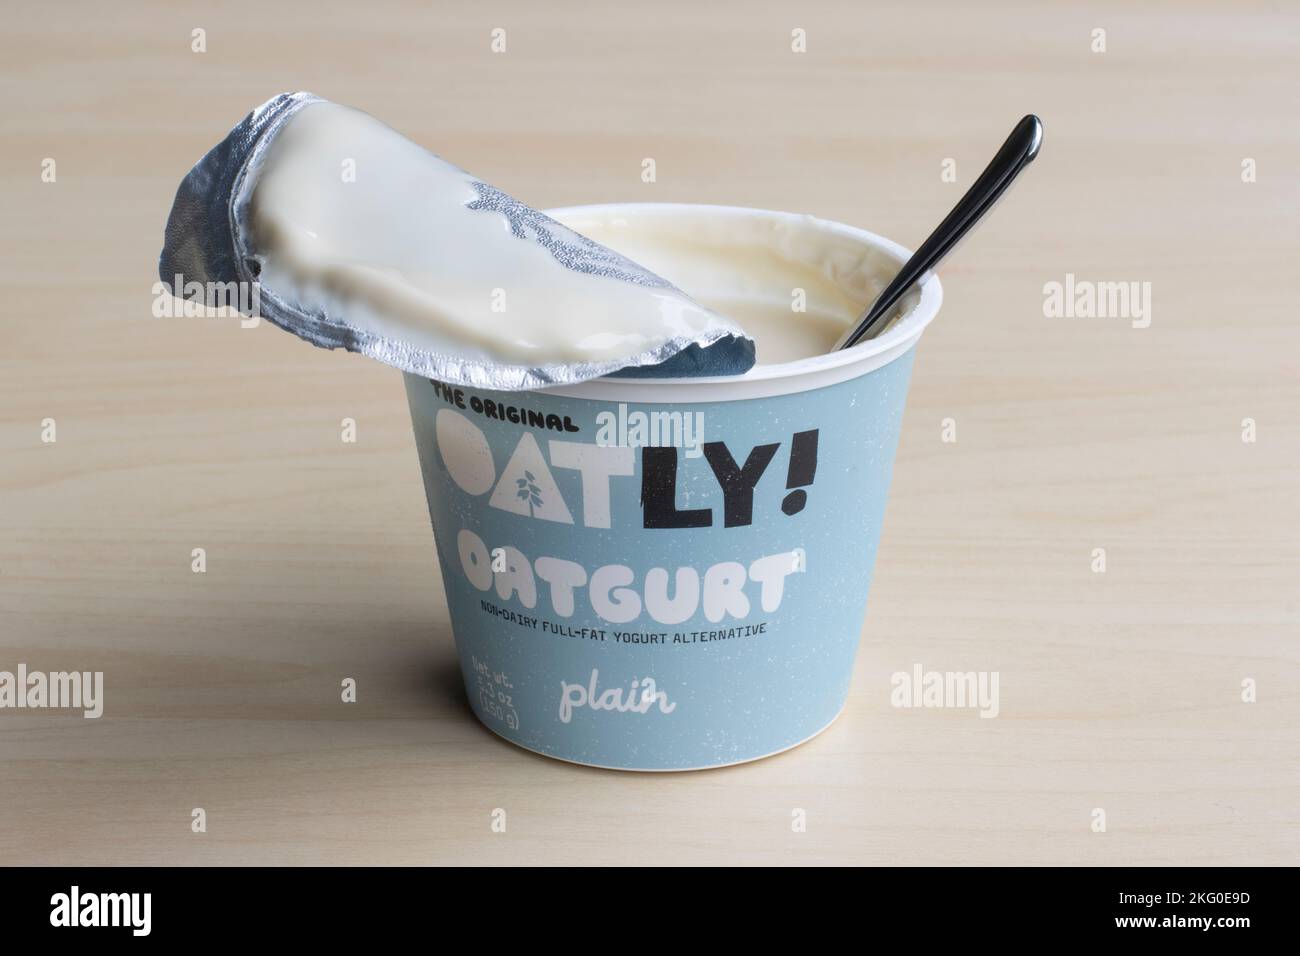 Una tazza di oatgurt semplice di marca Oatly, un'alternativa di yogurt intero non caseario prodotta da Oatly Group AB, con un cucchiaio, isolato su fondo di legno. Foto Stock